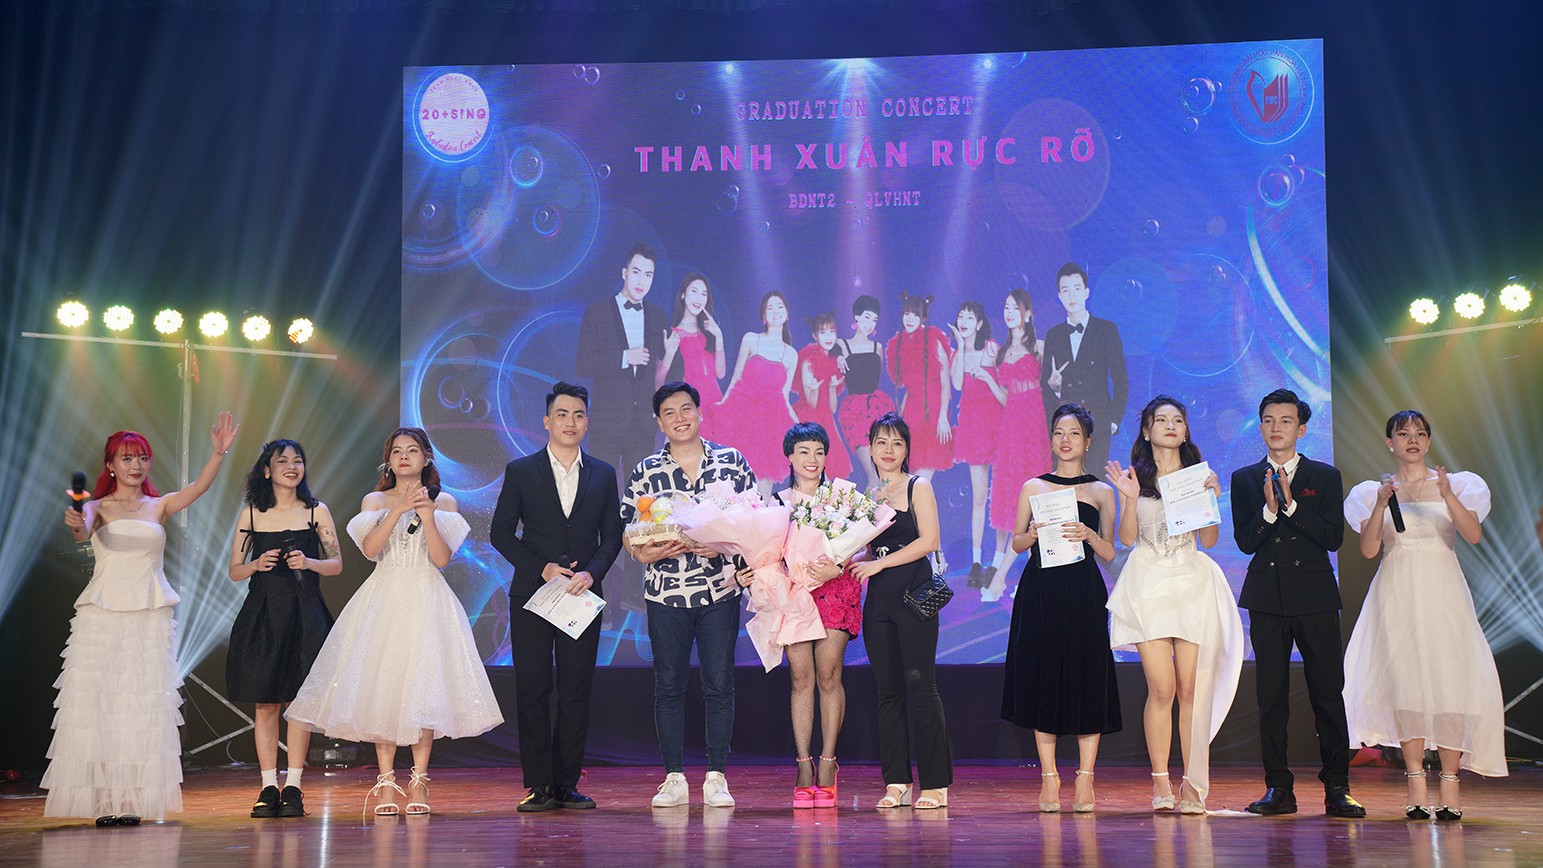 Tại chương trình, 3 sinh viên xuất sắc nhất đã nhận được những phần học bổng đặc biệt mà ca sĩ Ngọc Khuê, nhà sản xuất âm nhạc Huy Ngô cũng như Ban Tổ chức chương trình 20+ Sing dành tặng. Mỗi phần học bổng trị giá 100 triệu đồng